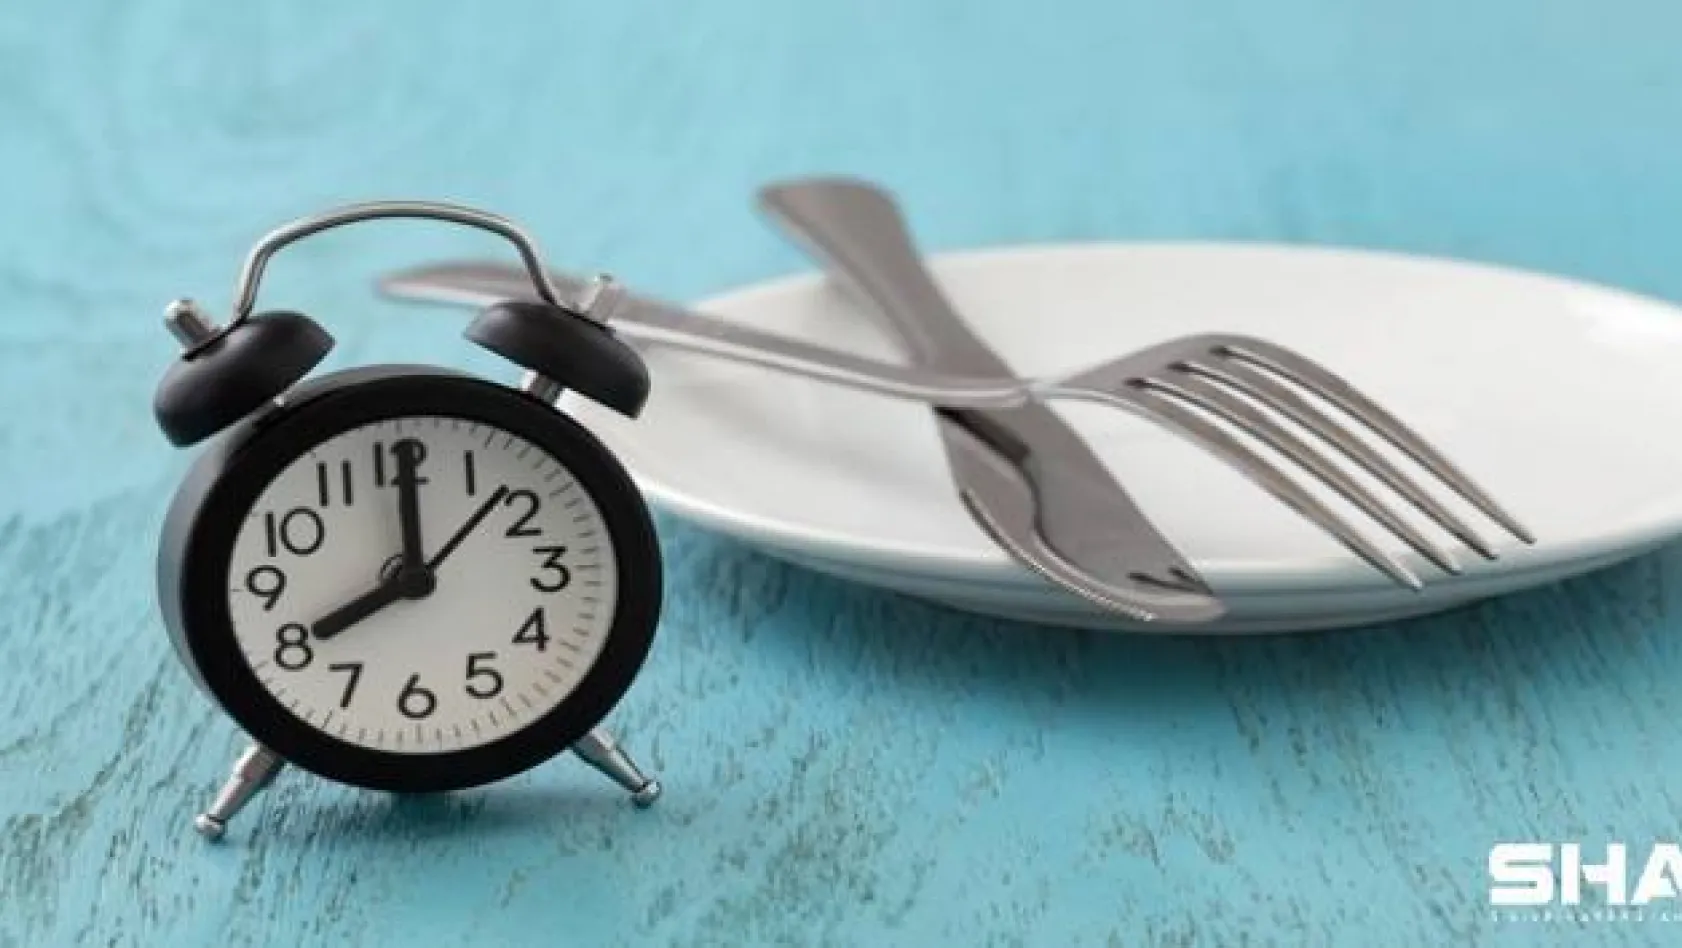 Sirkadiyen diyette odak nokta: 'İçerik değil zaman''